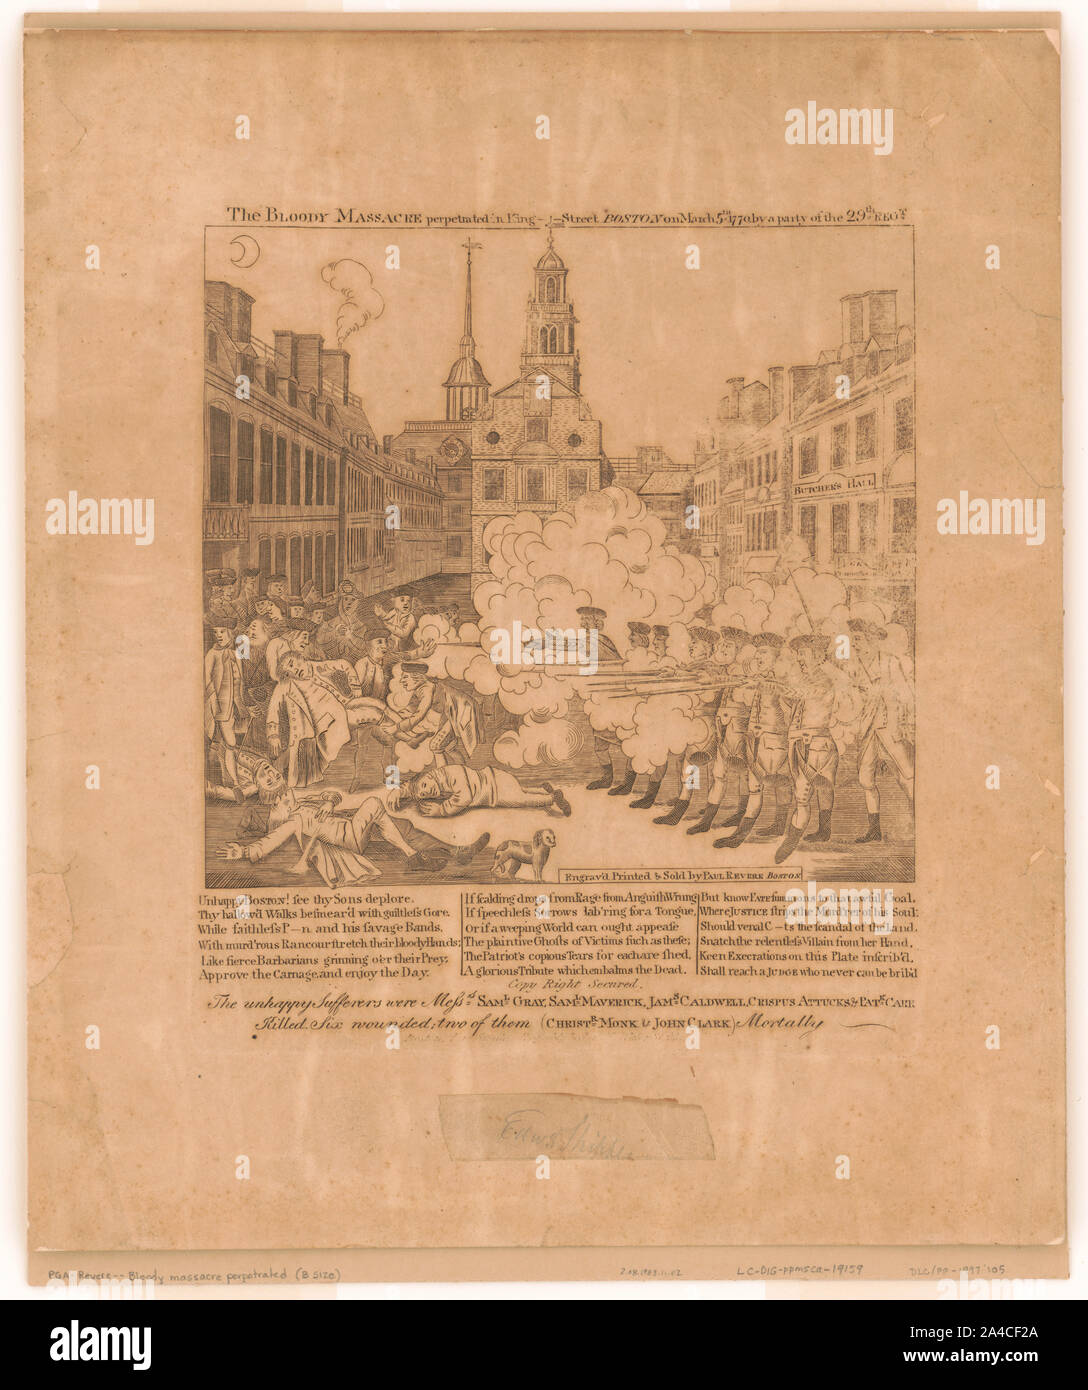 Il sanguinoso massacro perpetrato in King Street Boston il 5 marzo 1770 da parte di una delle parti della ventinovesima regt. / Engrav'd, stampato e venduto da Paul Revere, Boston. Foto Stock